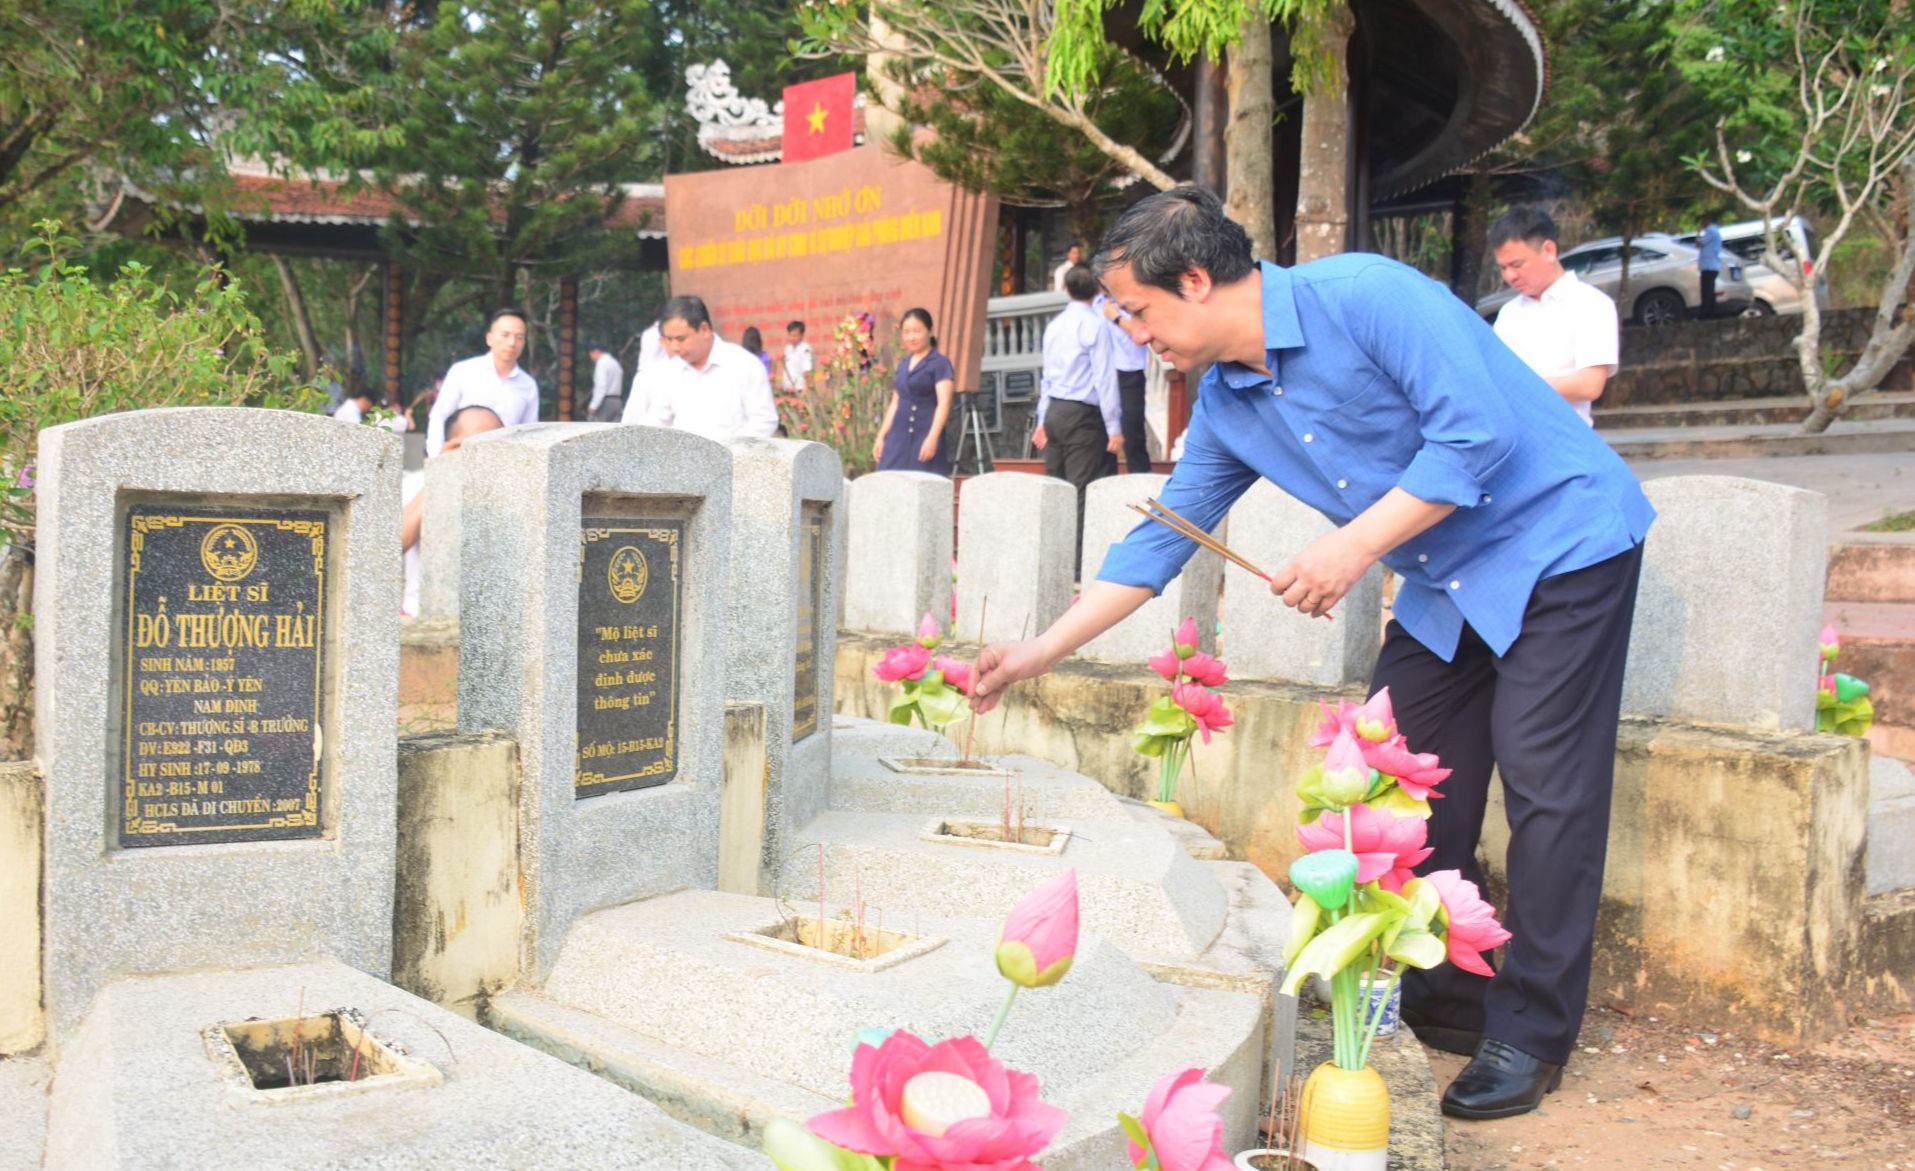 Bộ trưởng Bộ GD&ĐT Nguyễn Kim Sơn viếng thăm các liệt sĩ ngành Giáo dục tại Tây Ninh. Ảnh: Anh Tú